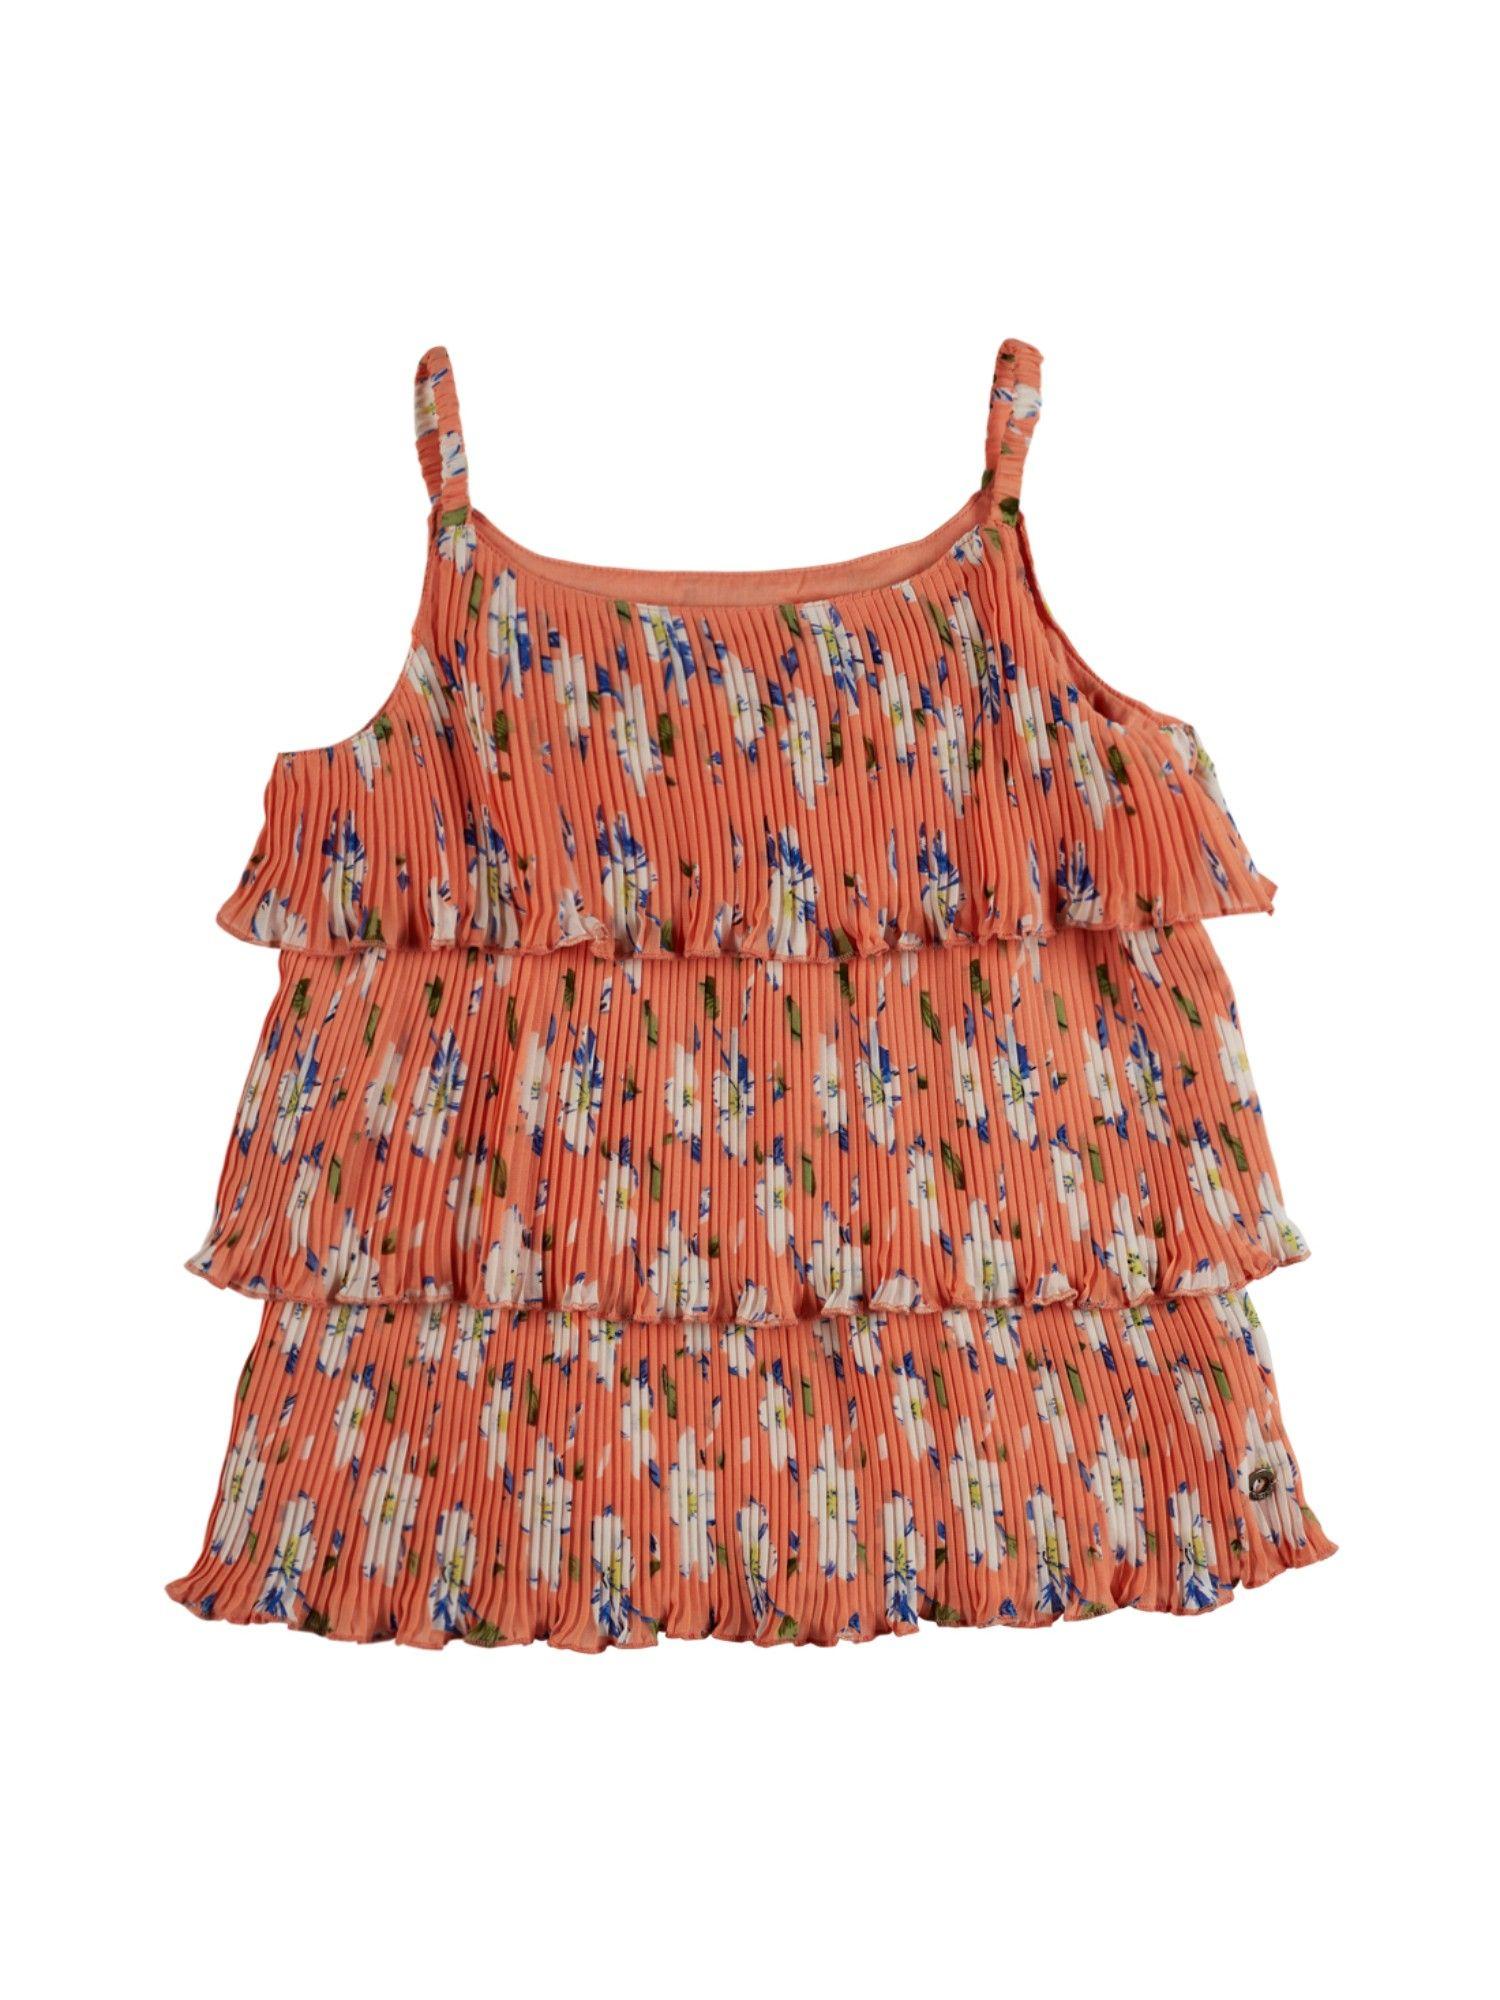 girls-orange-floral-print-top-full-sleeves